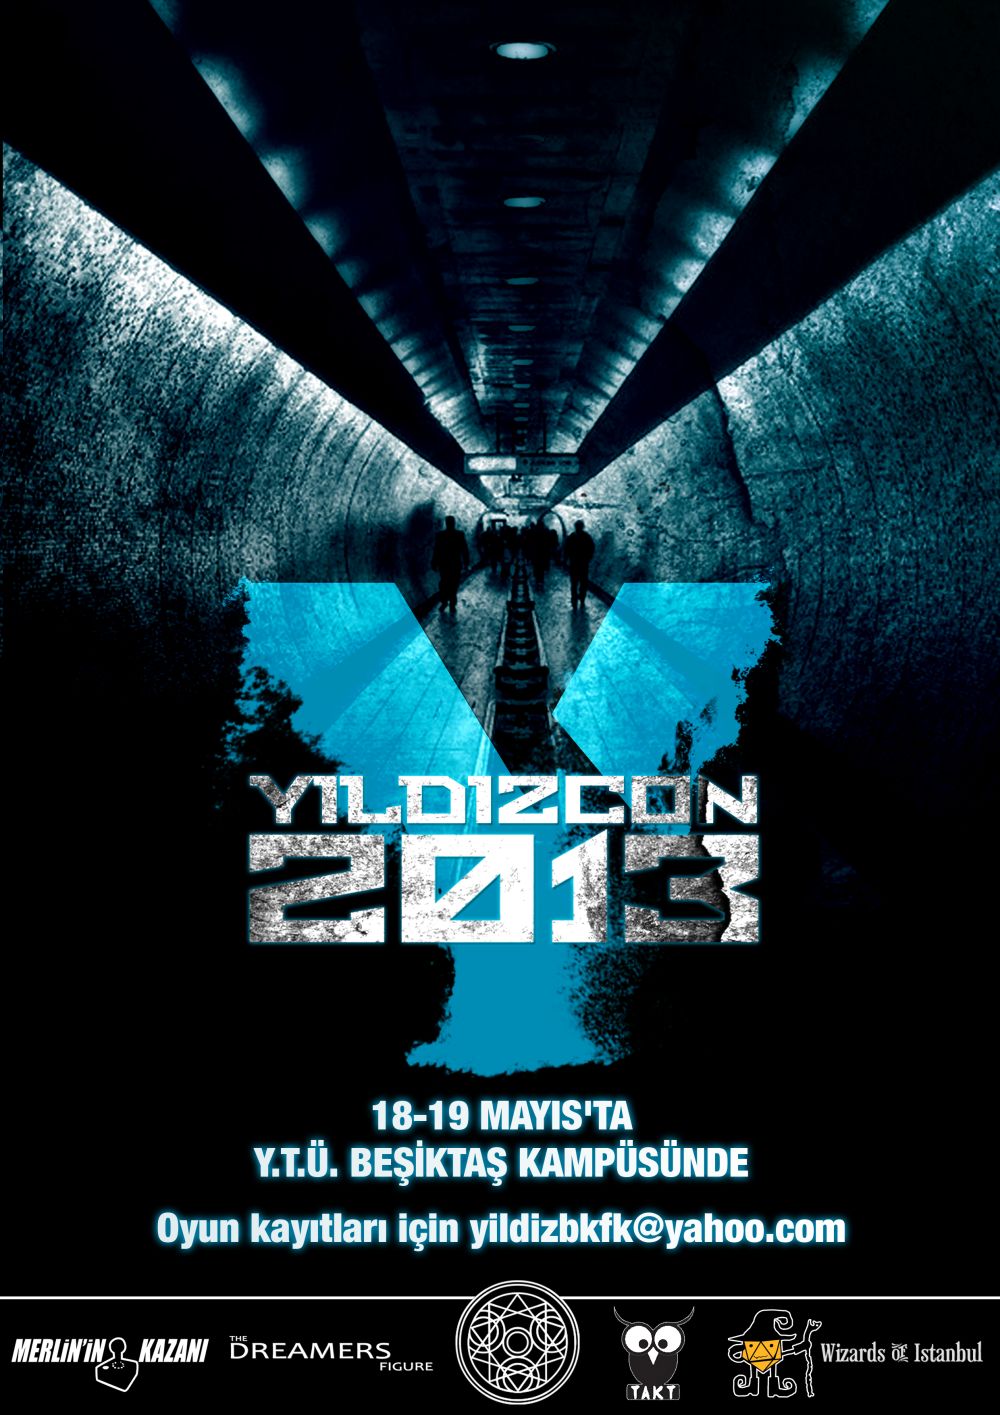 YıldızCON 2013 yarın!